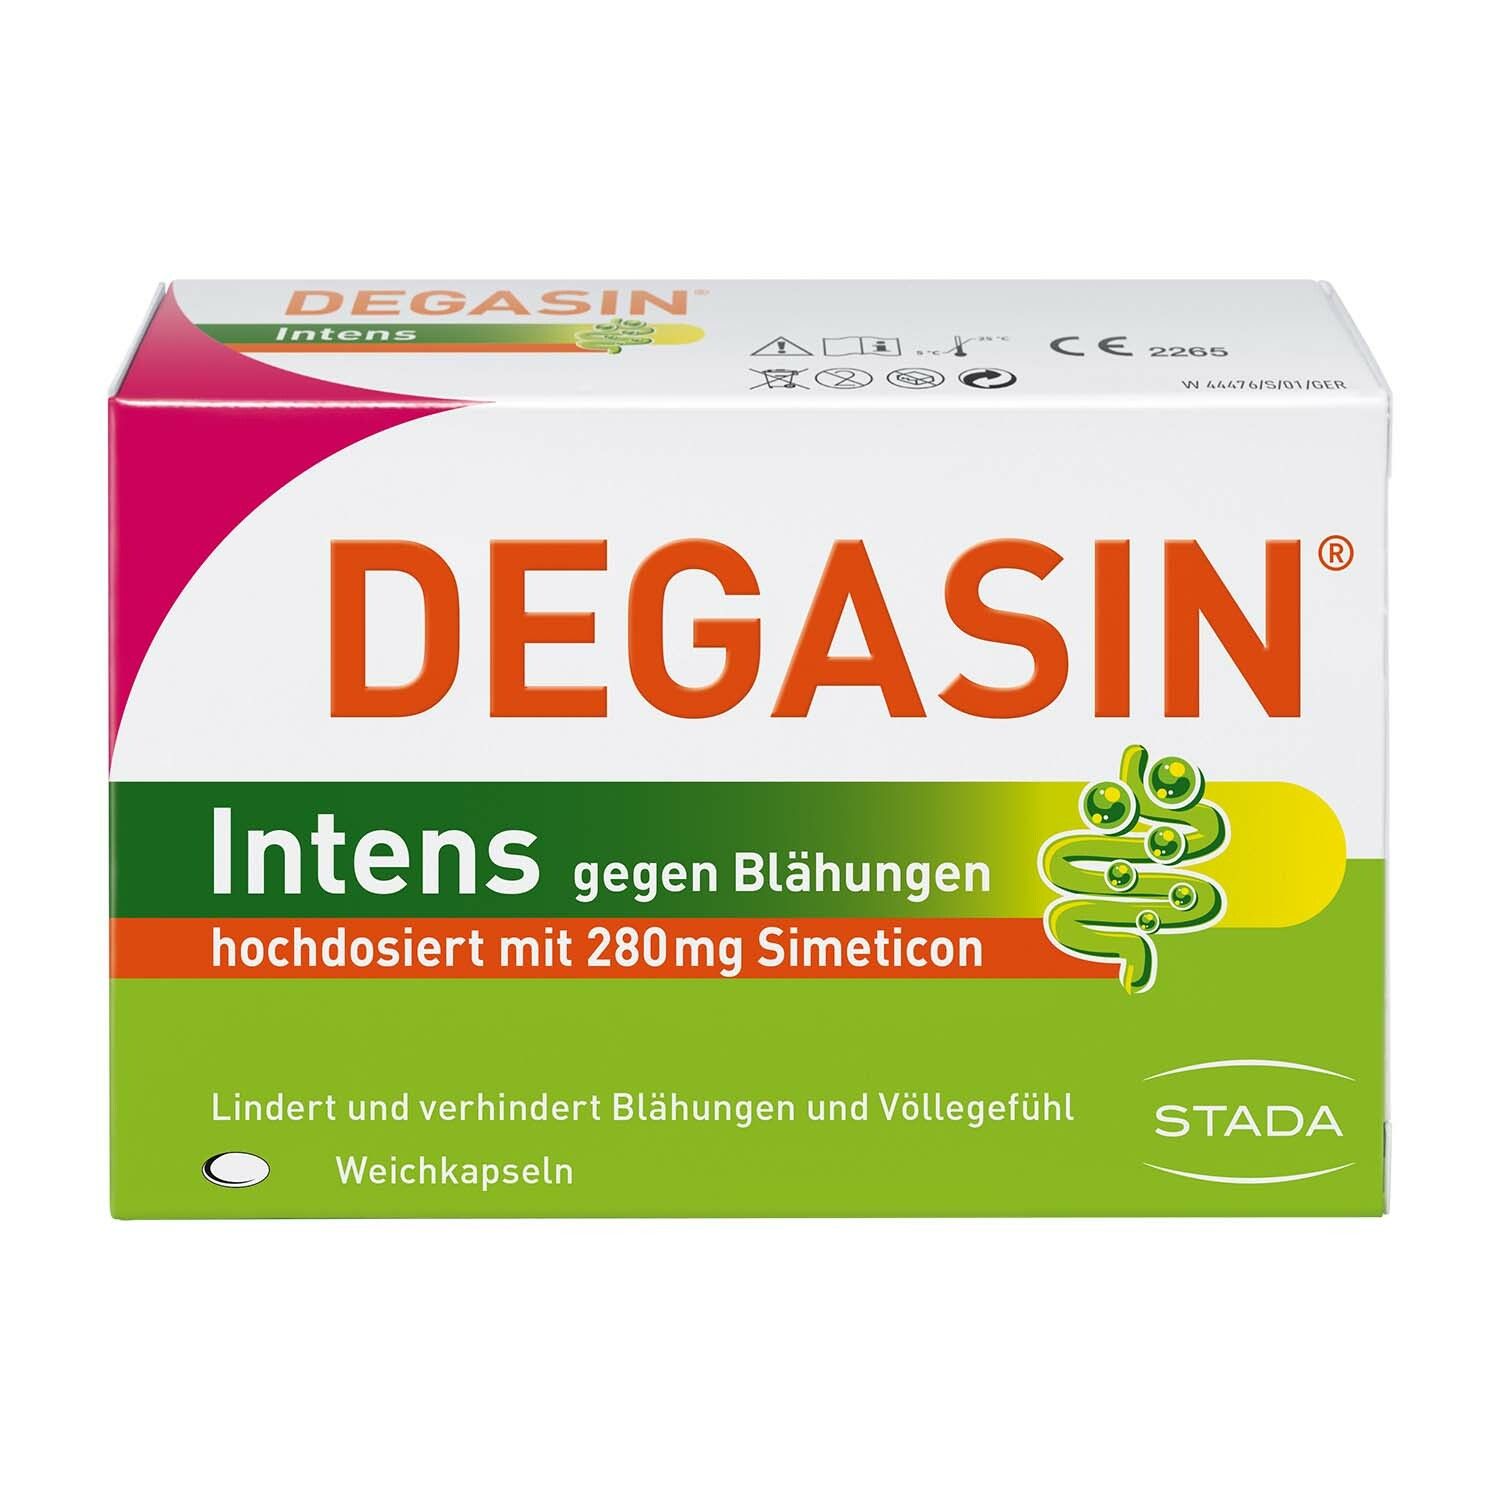 DEGASIN® Intens 280mg gegen Blähungen und Völlegefühl